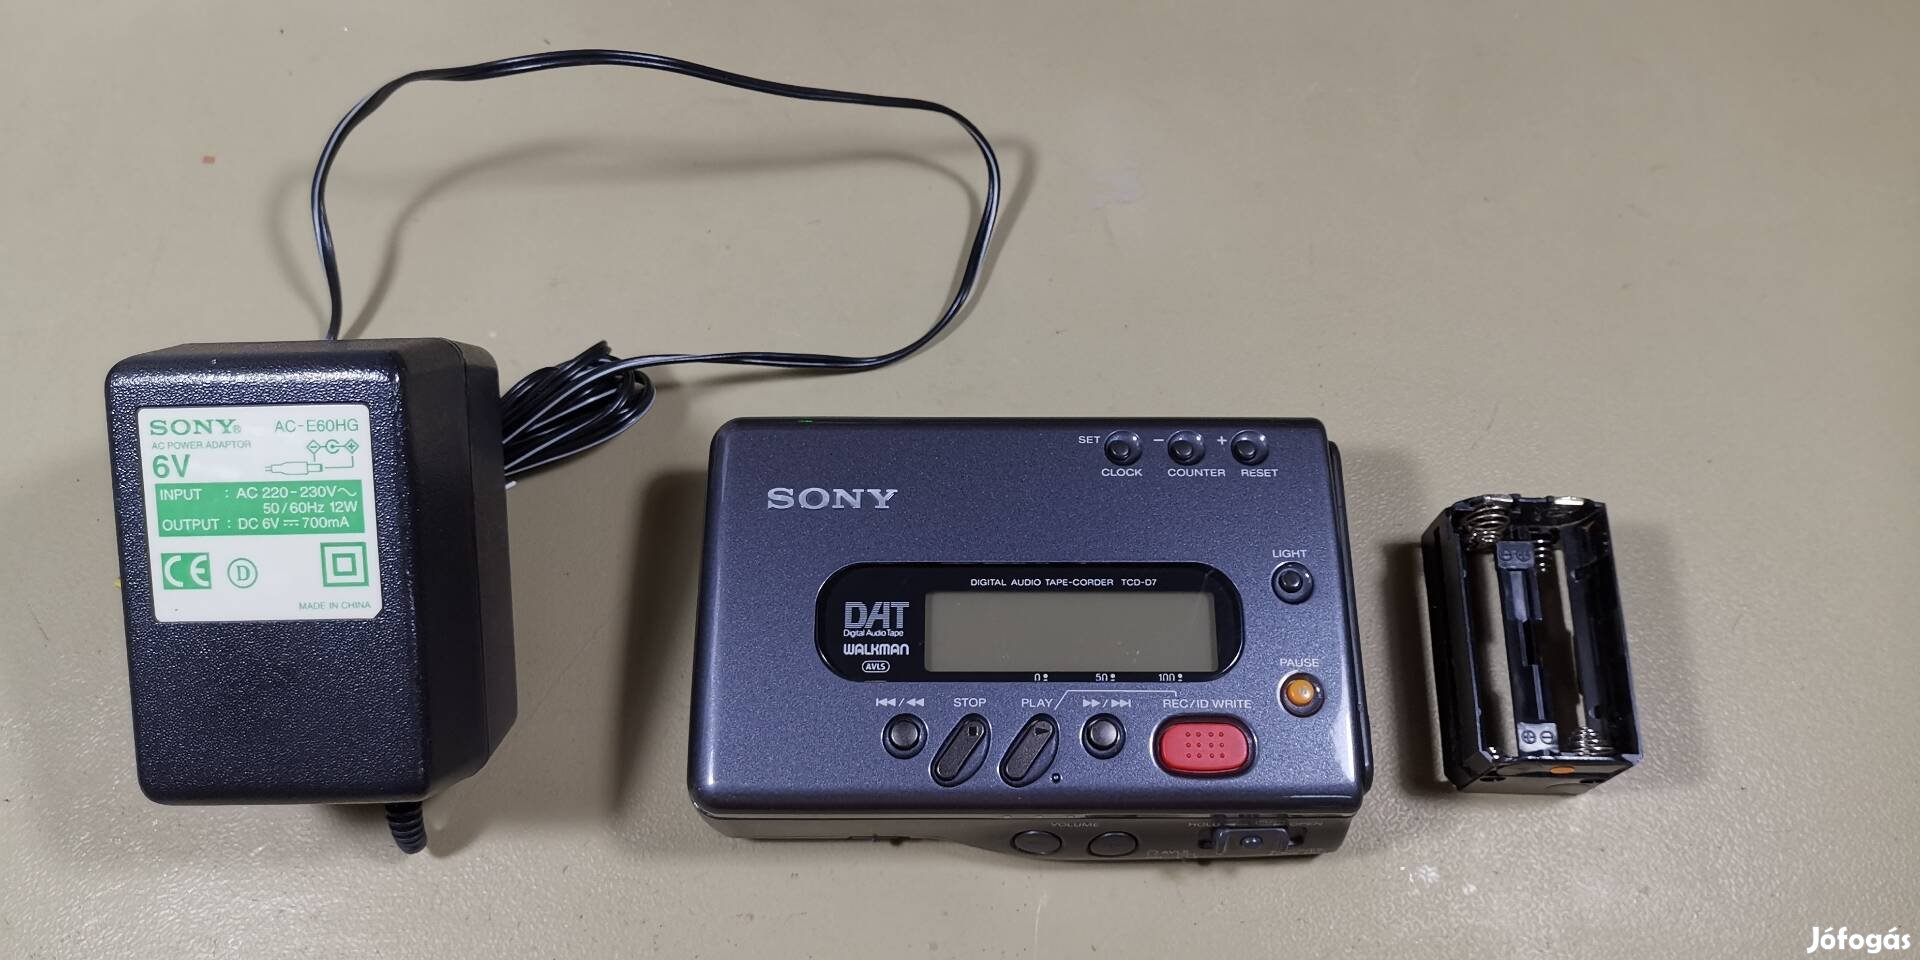 Sony TCD-D7 DAT Walkman